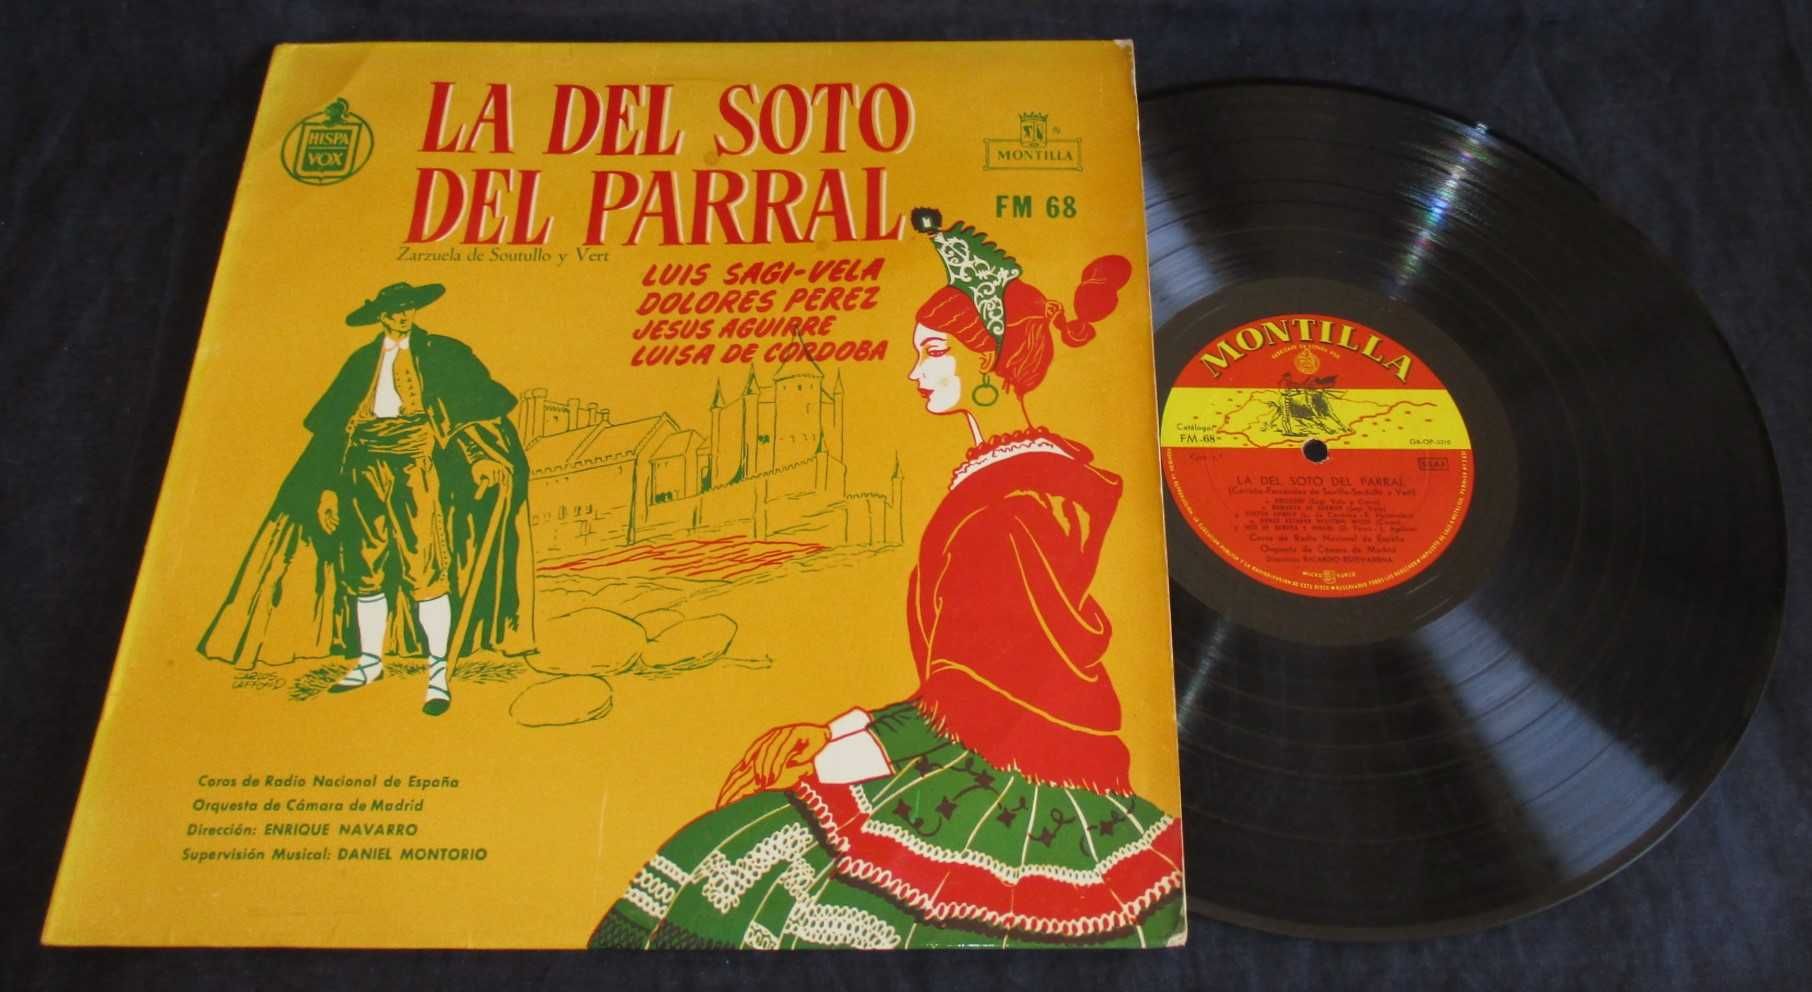 Disco LP Vinil La Del Soto Del Parral Zarzuela de Soutullo y Vert